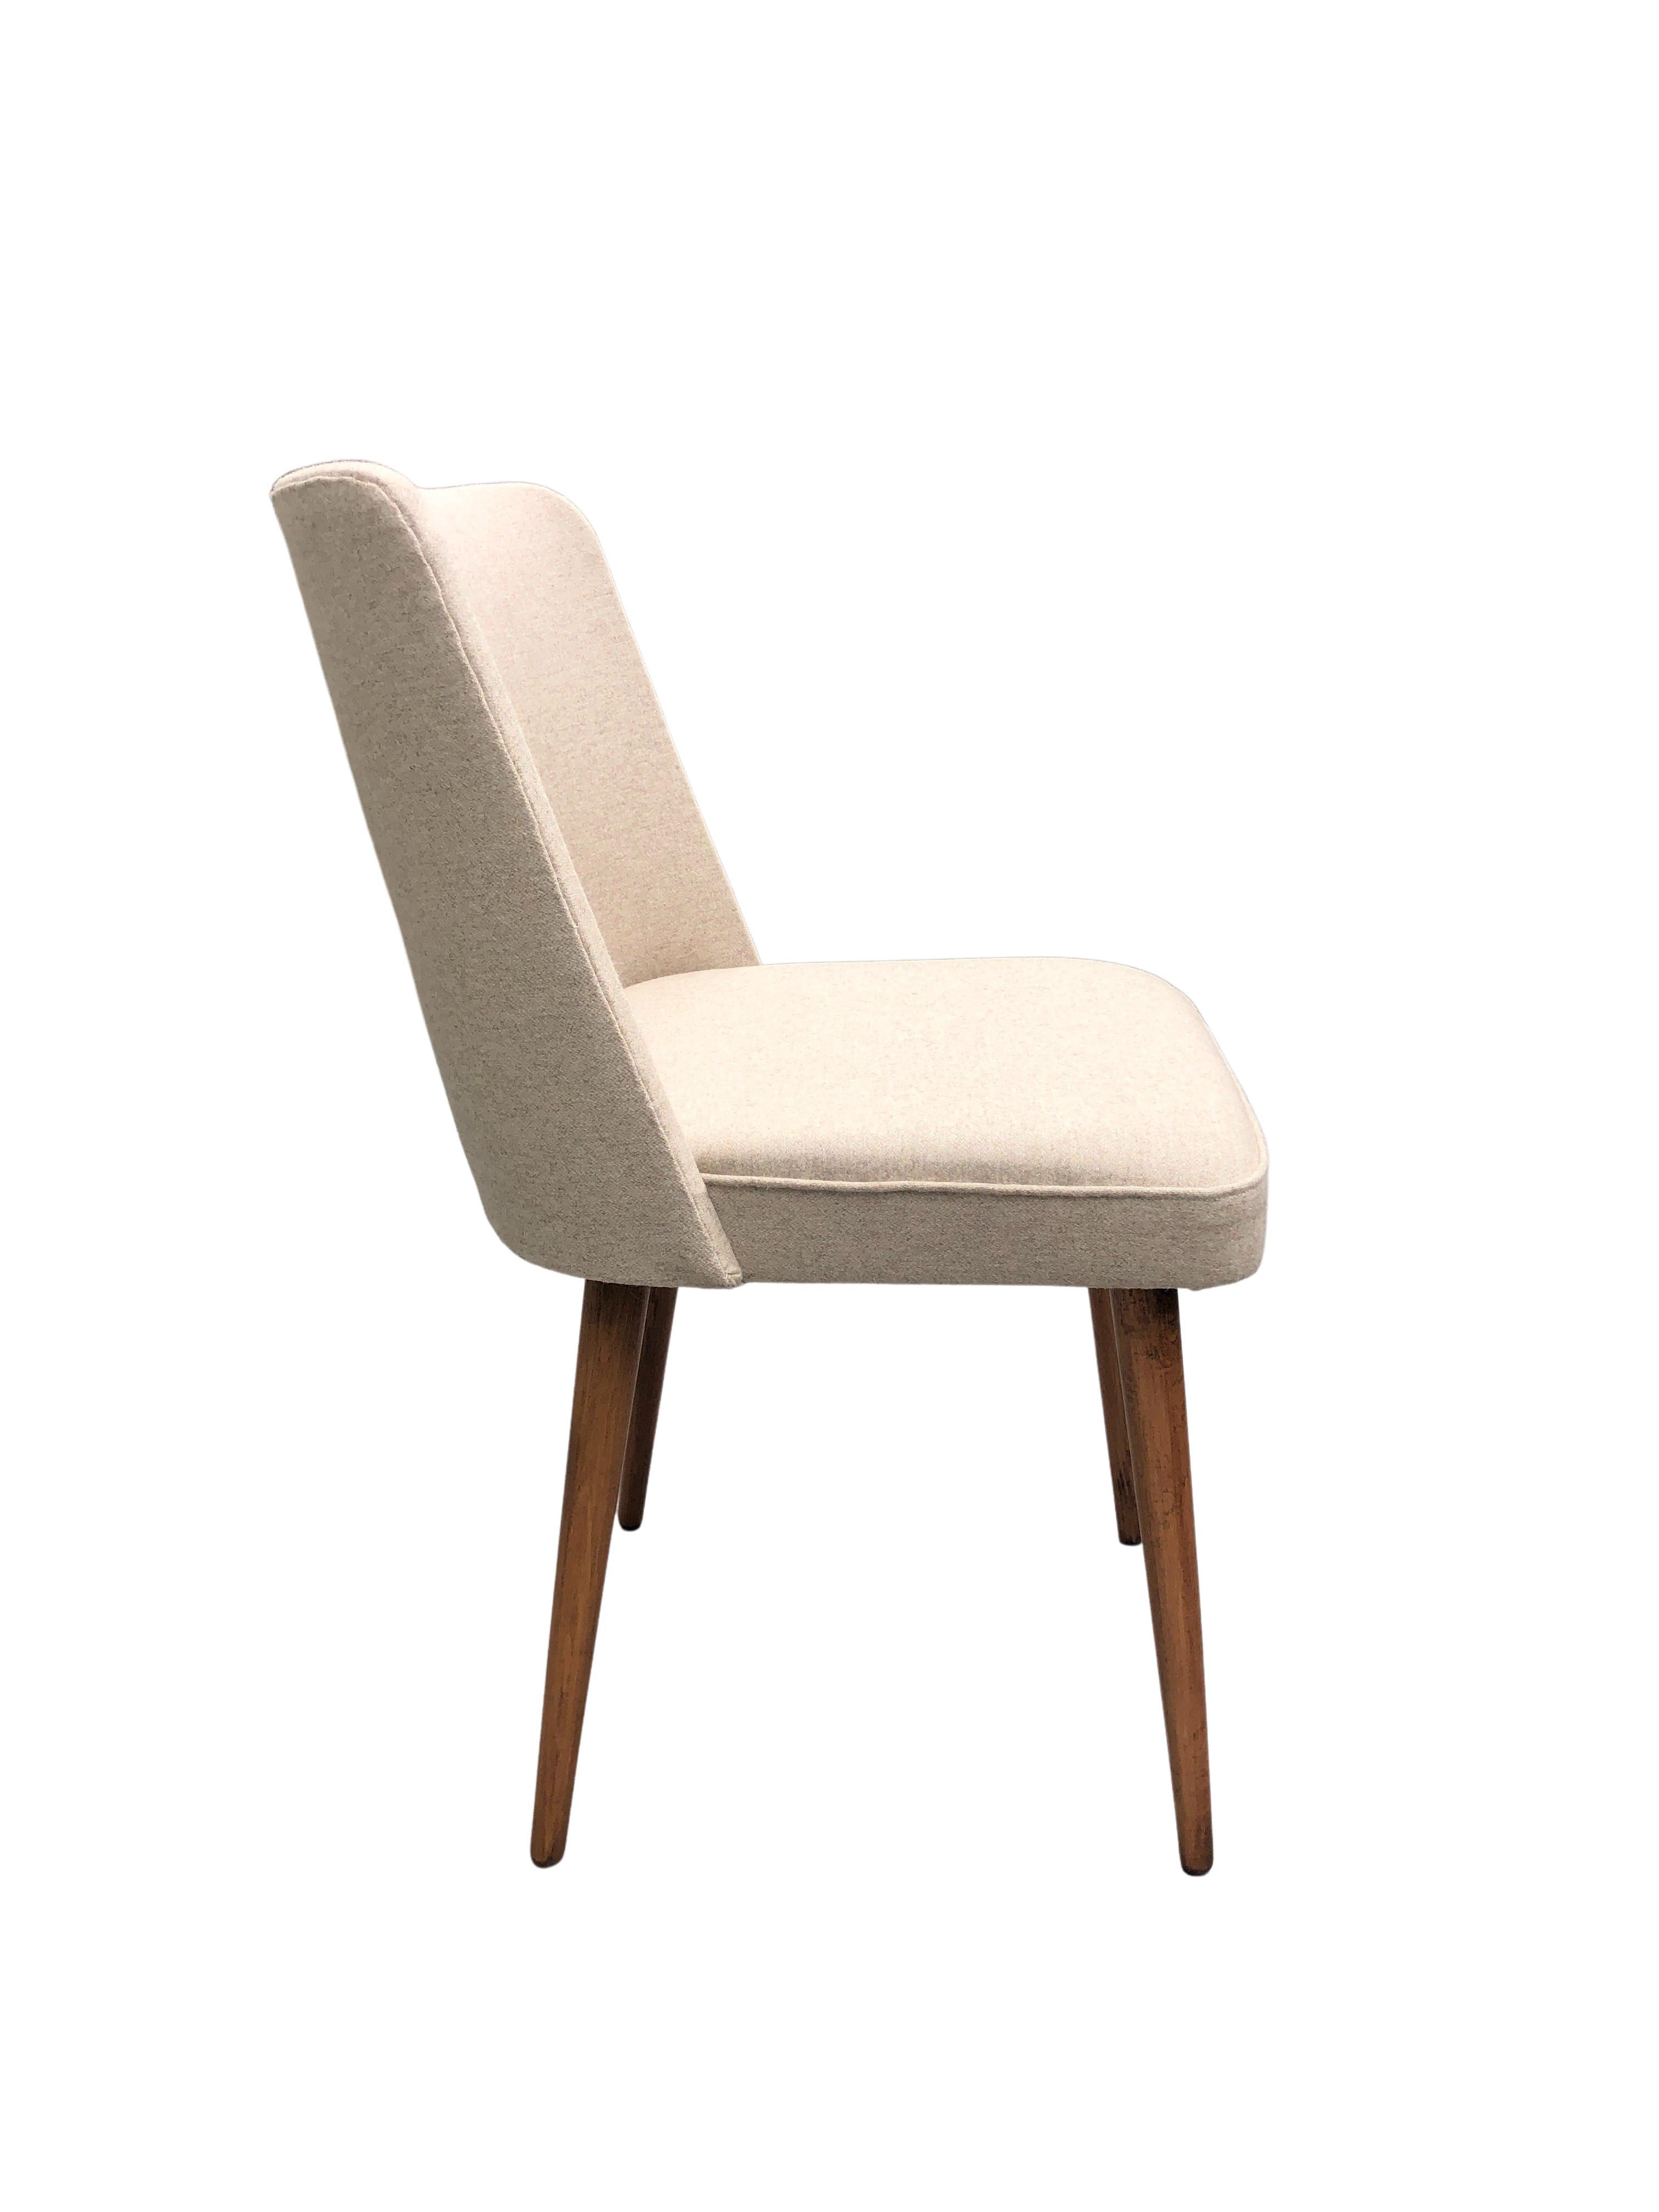 Belle chaise de salle à manger à la silhouette moderniste, conçue vers 1962, fabriquée par Slupskie Fabryki Mebli en Pologne. La structure est faite de contreplaqué et de bois de hêtre. Le rembourrage est fait d'une laine de haute qualité de couleur